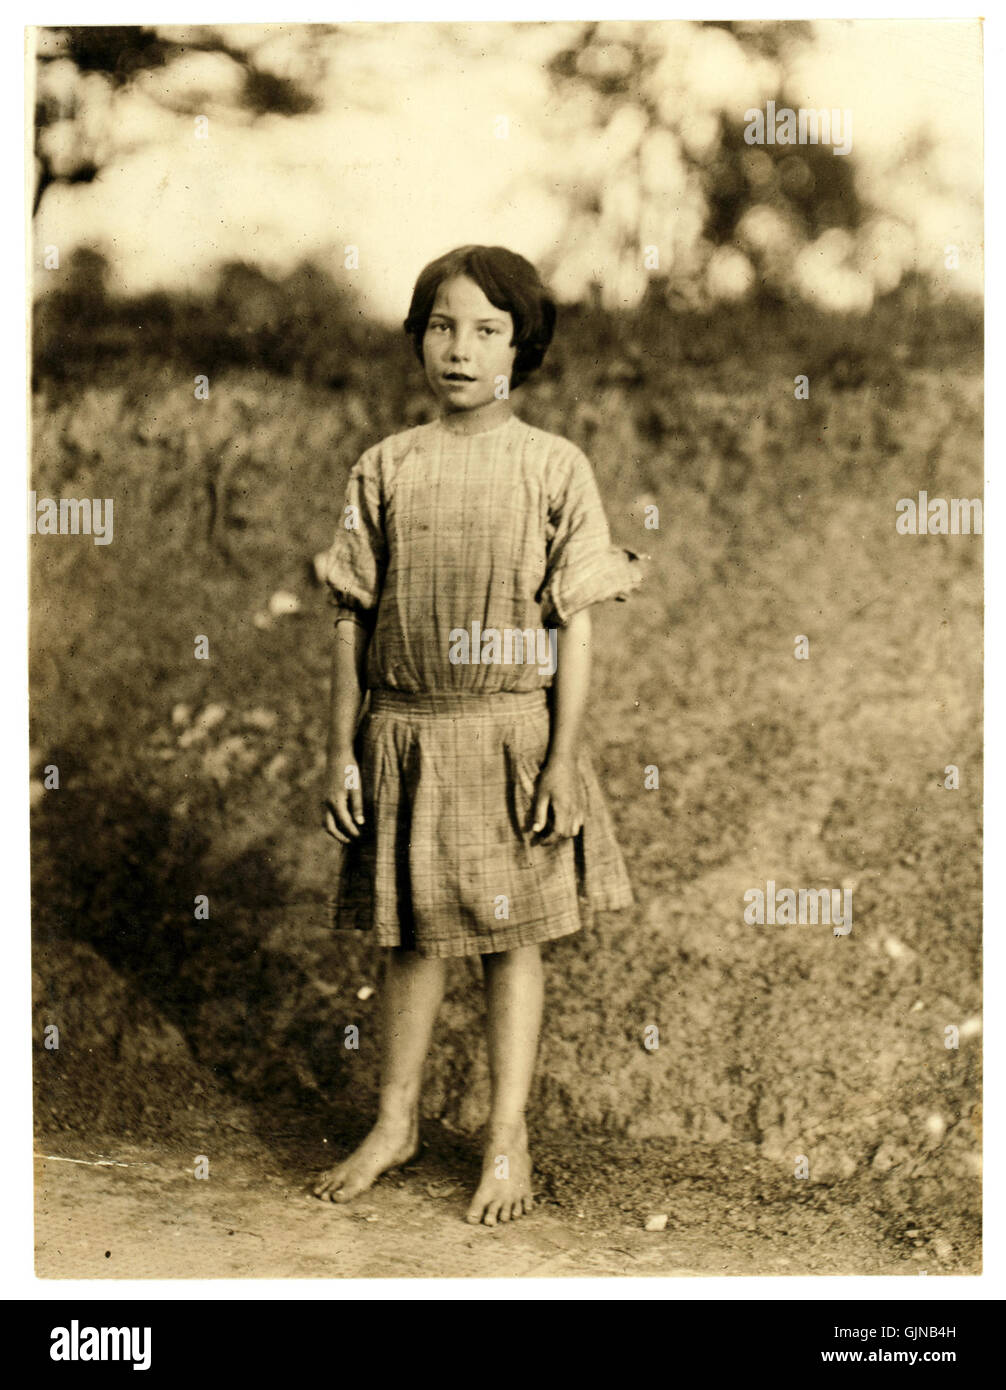 Lewis Hine, Ruth Rous, 11 ans ou moins, travailleur dans une filature de coton, Randleman, Caroline du Nord, 1913 Banque D'Images